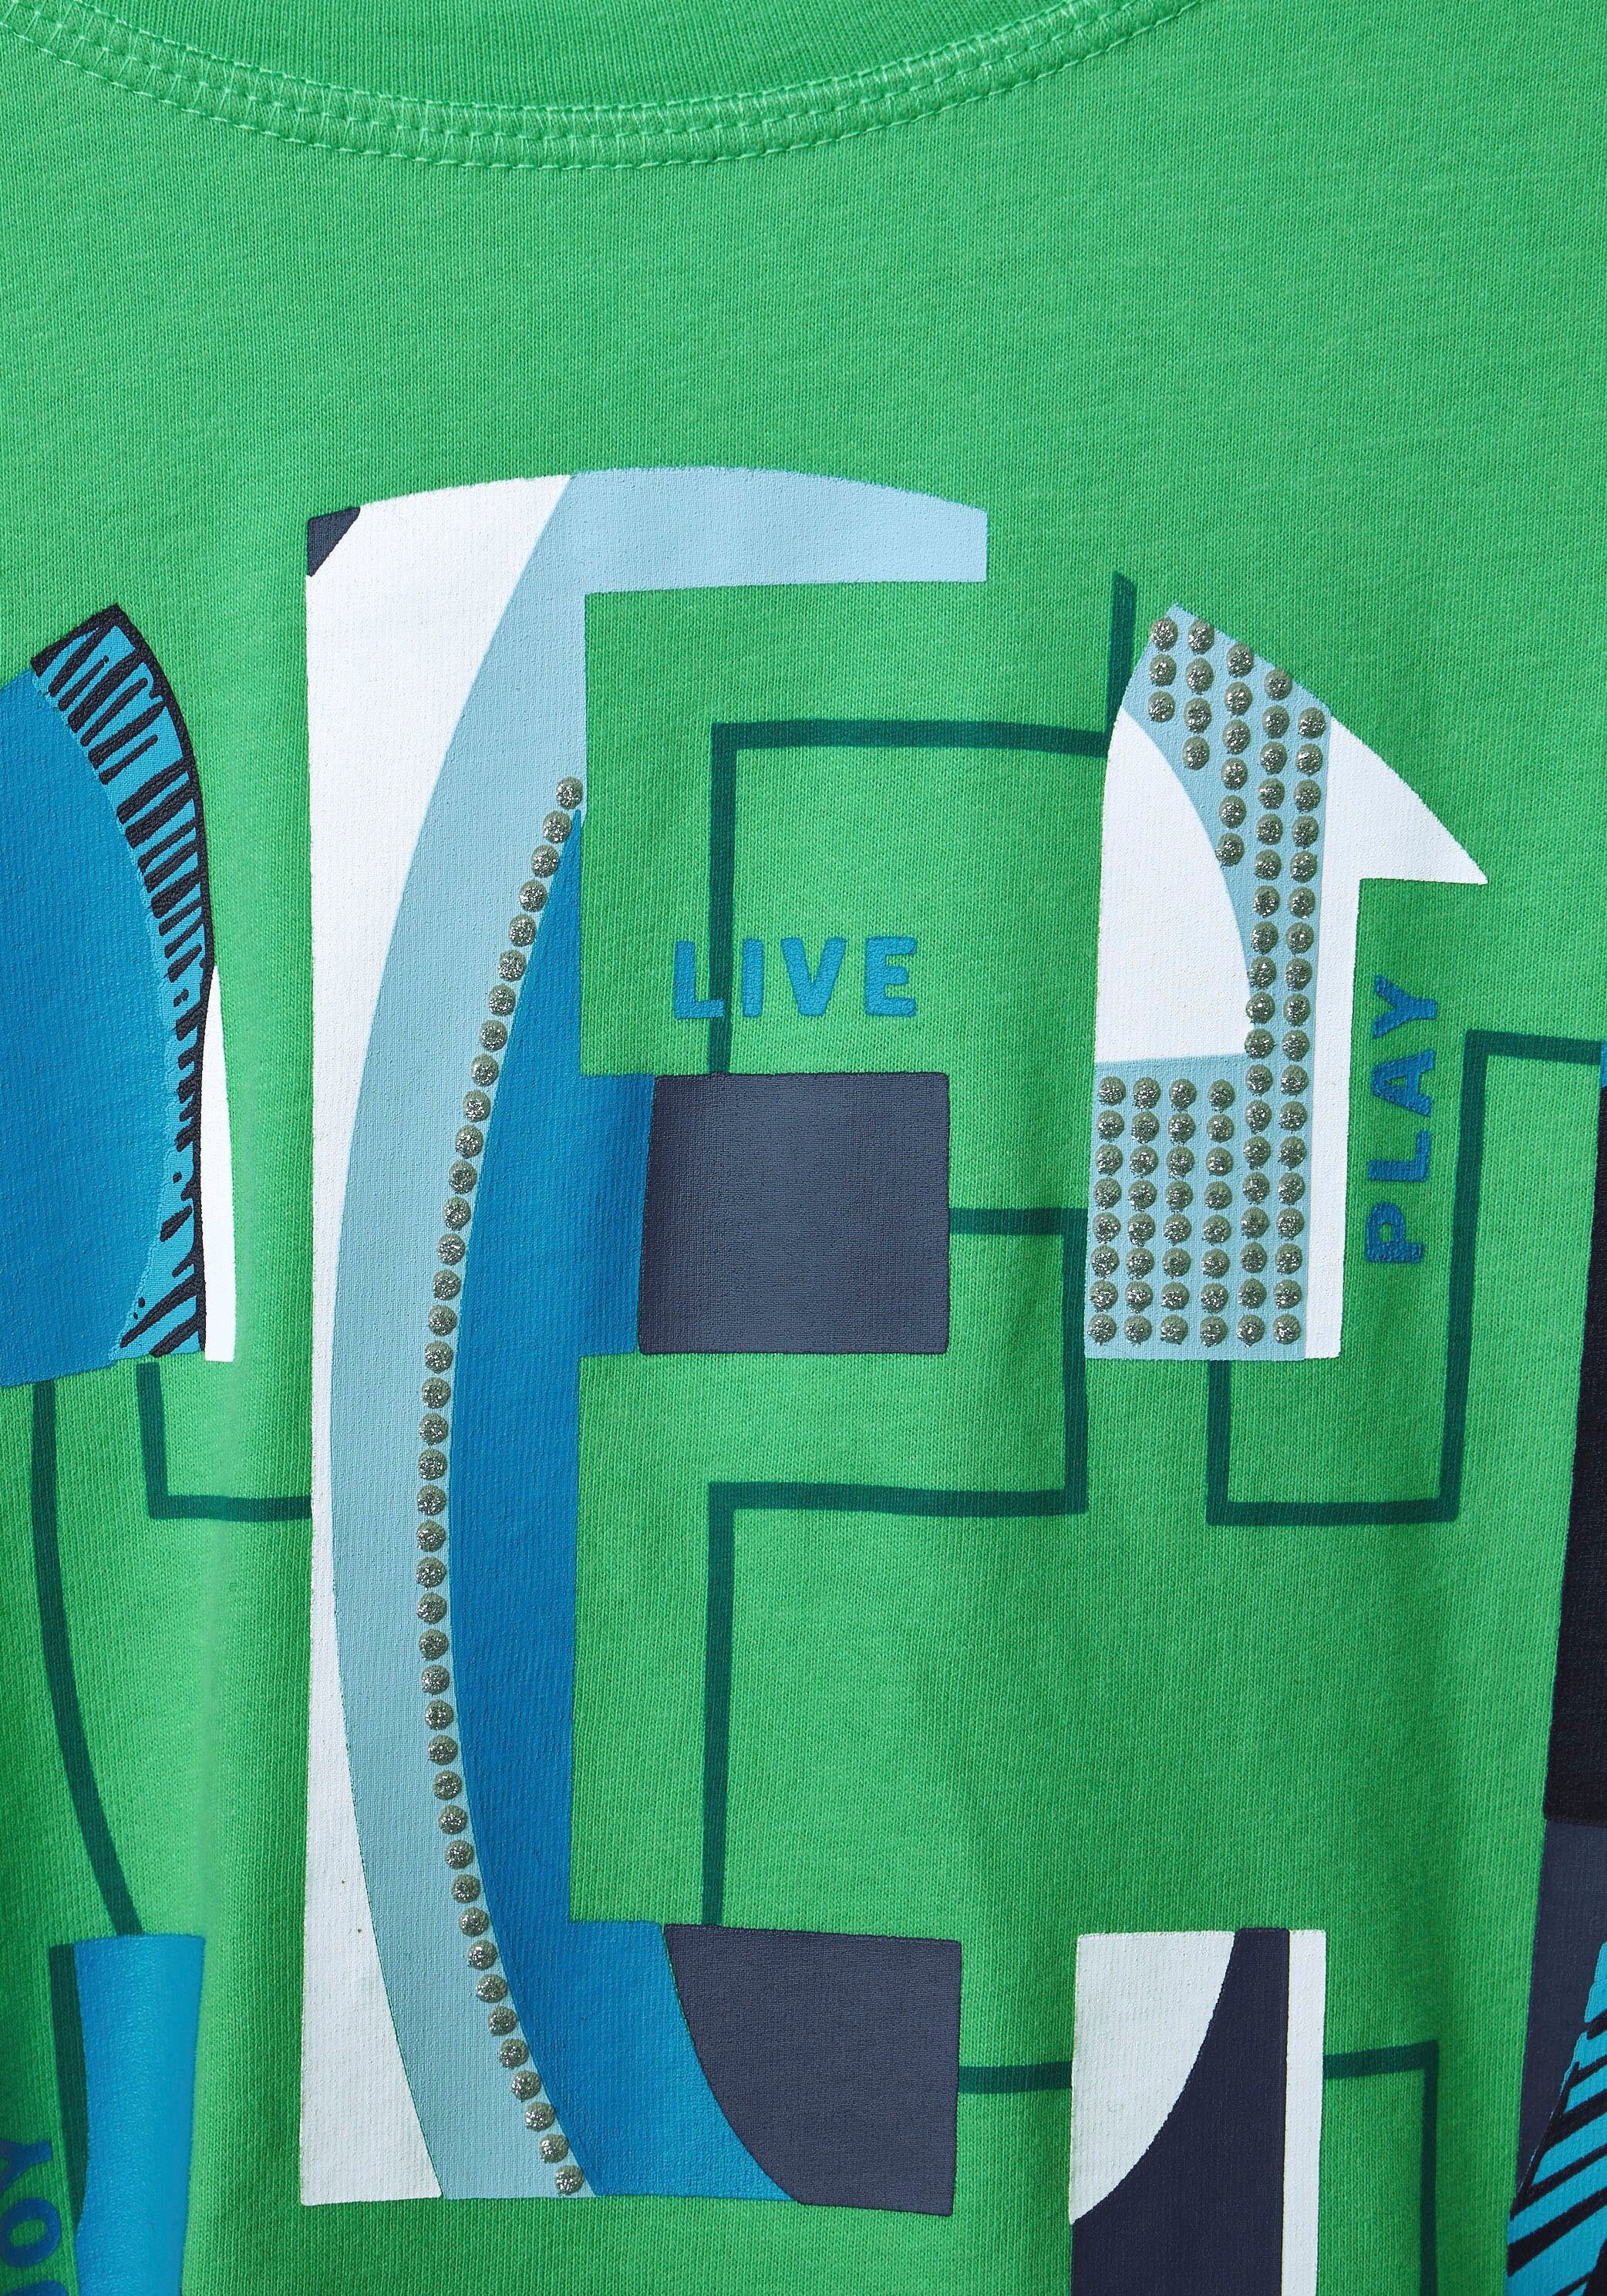 Cecil 3/4-Arm-Shirt in modernem Design green smash